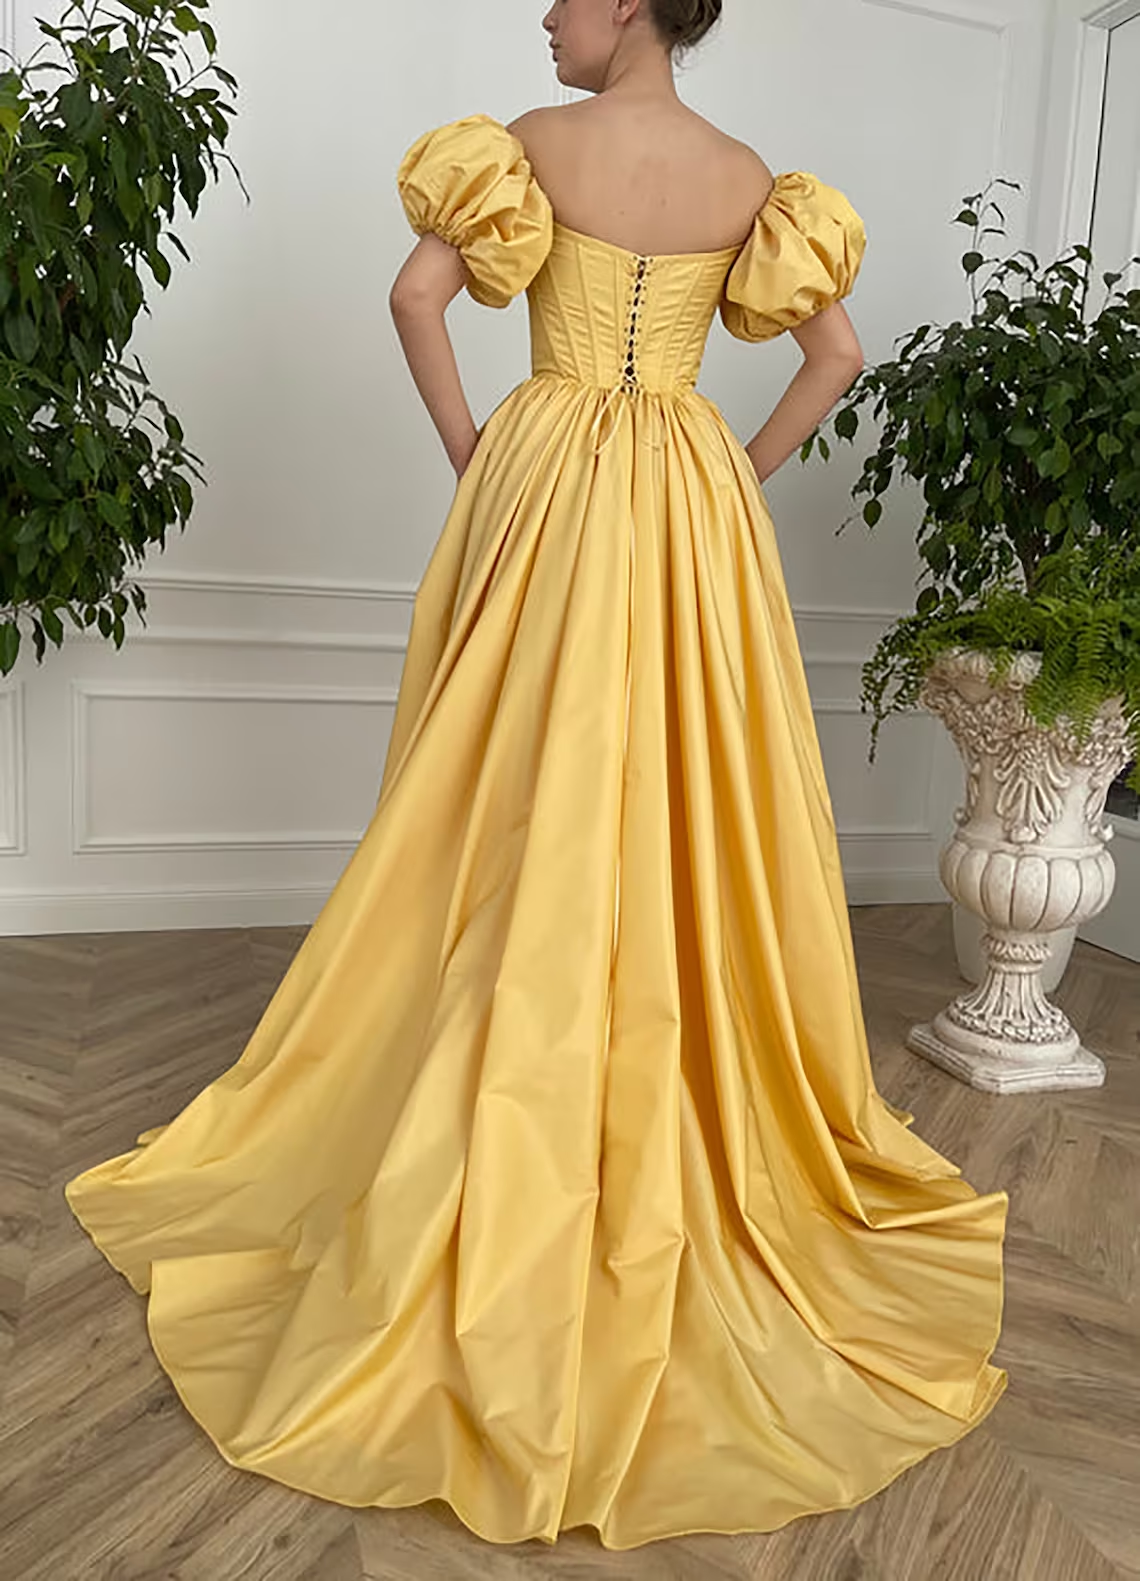 Vintage Fairy Korsettkleid, A-Linie gerades langes gelbes Taft-Abschlussballkleid Ballkleid, Kurzarm-Hochzeits-Ballkleid-Abschlussballkleid mit Schlitz gh2420